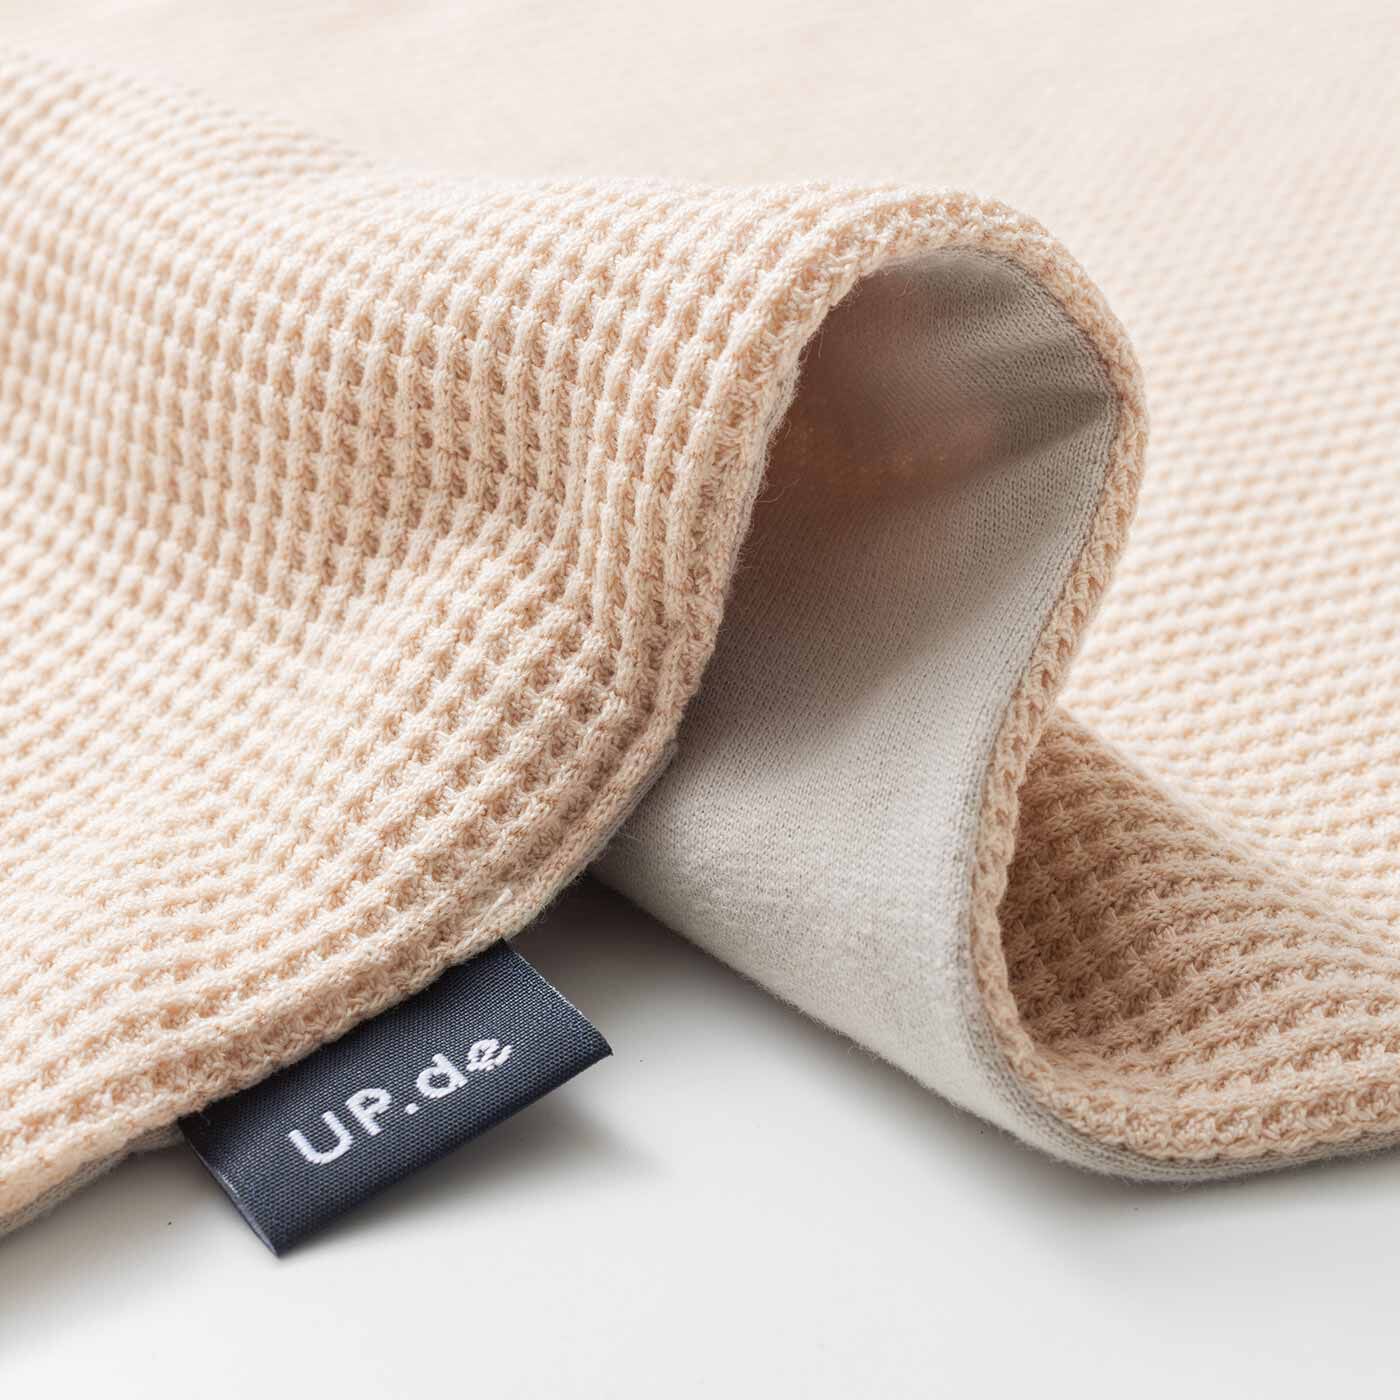 Real Stock|UP.de　さらっと肩掛け ポケットが便利なワッフルコンビの付けフード|表はロングシーズン気持ちいい綿100％のスウェット素材。内側は配色のふんわりワッフル素材。